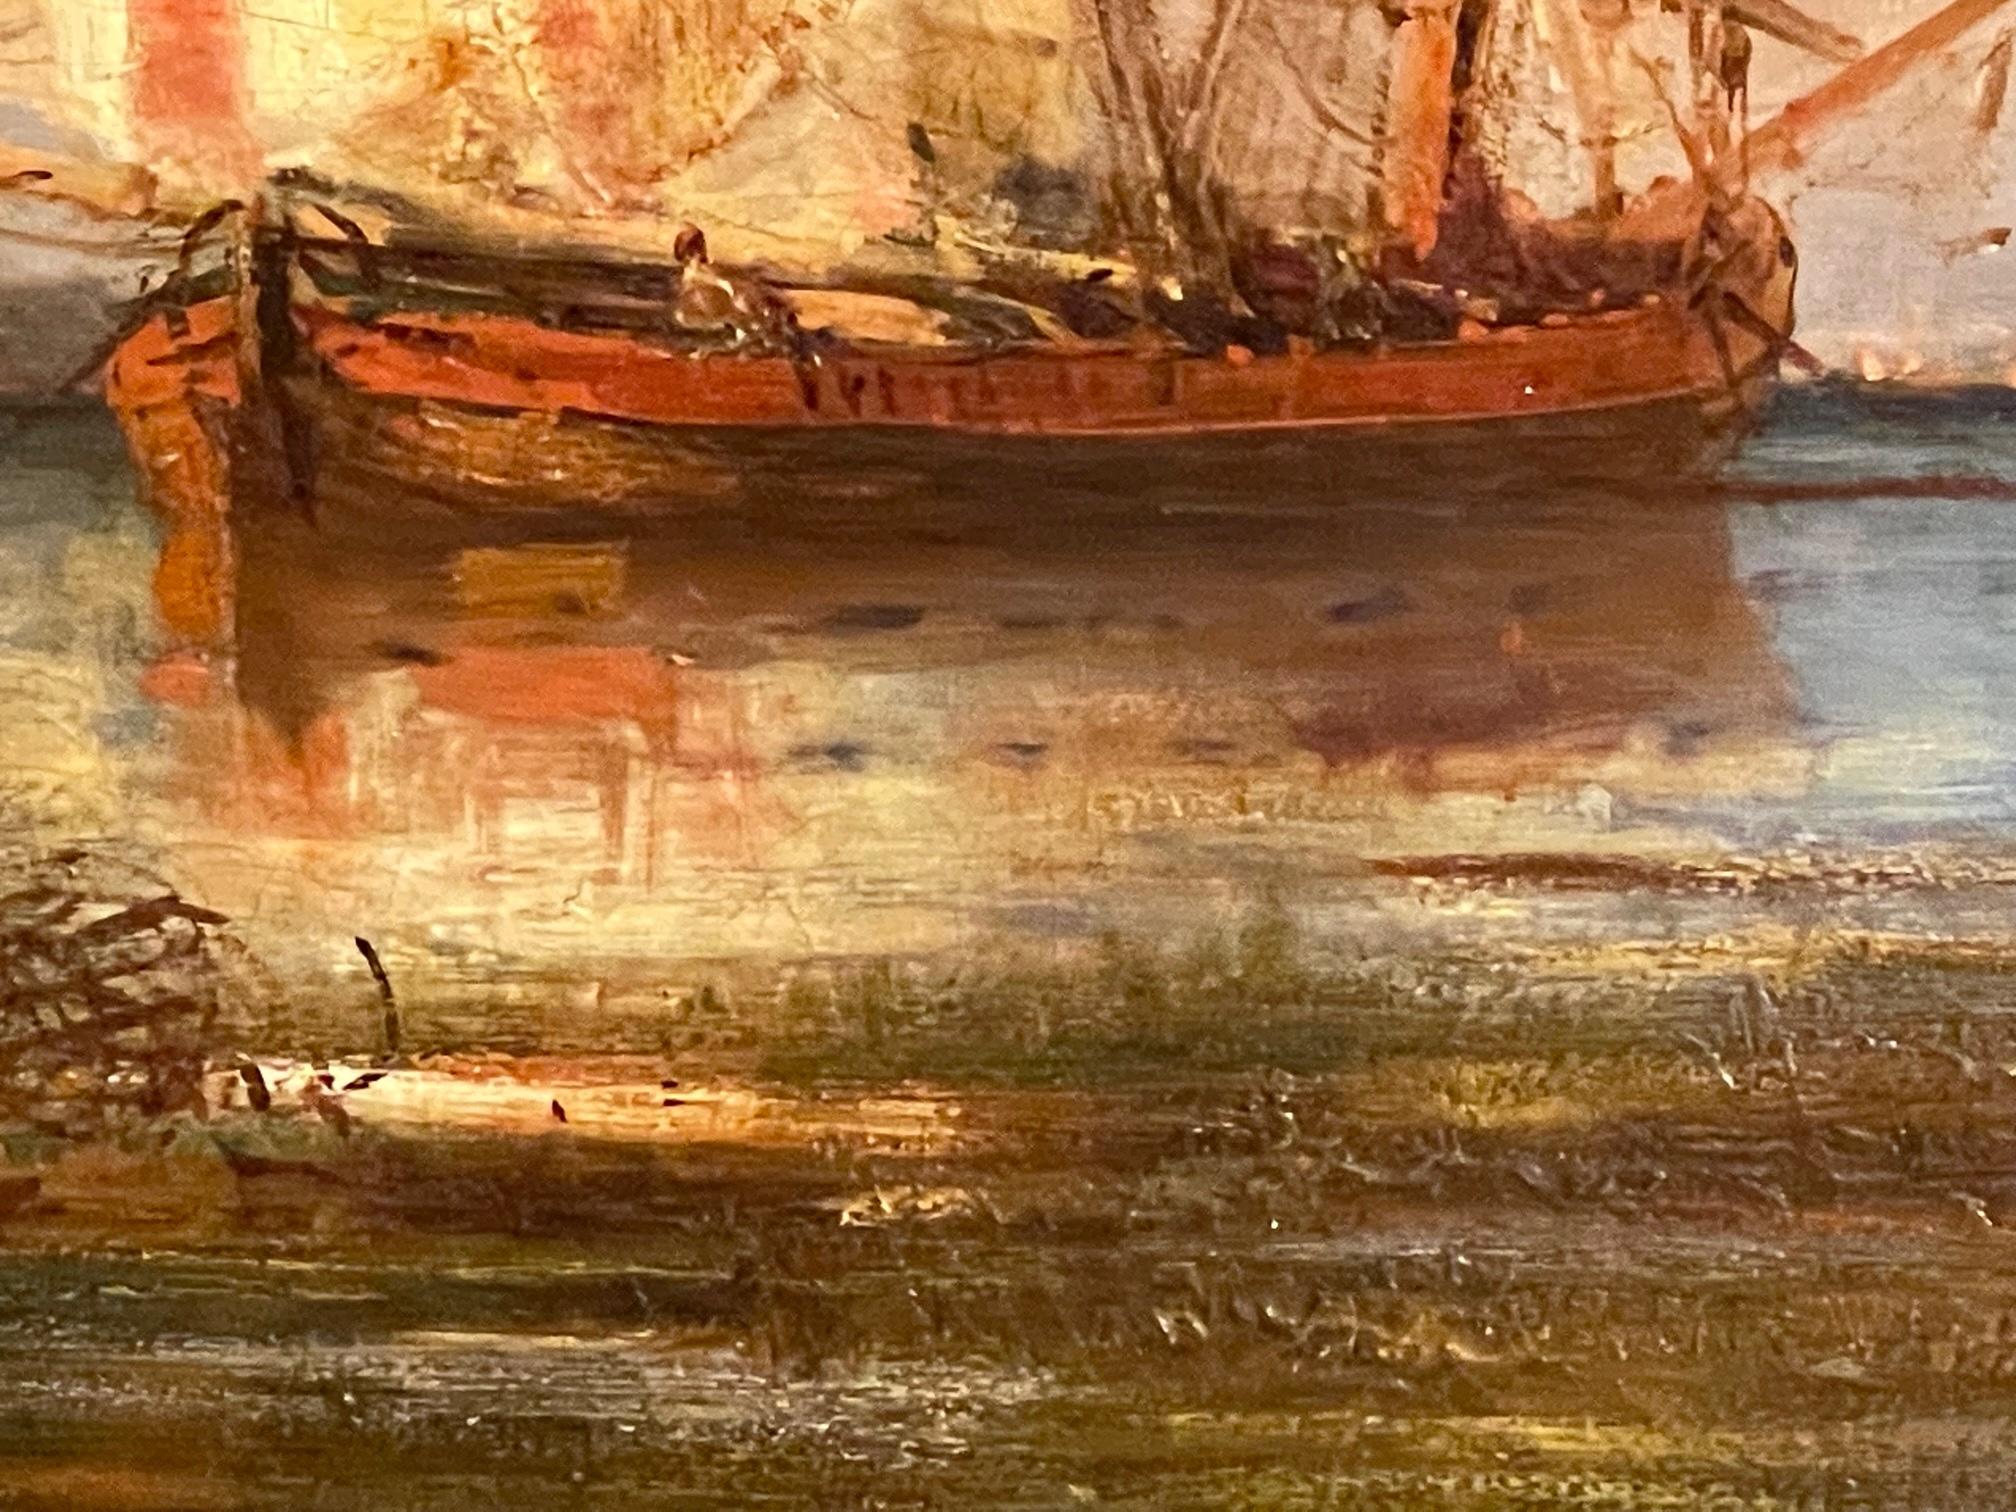 Huile sur toile française du XIXe siècle de Paul Charles Emmanuel Gallard-Lepinay (1842-1885), représentant des navires sur la côte vénitienne.  Gallard-Lepinay est réputé pour son travail maritime, notamment à Venise, mais aussi sur les côtes